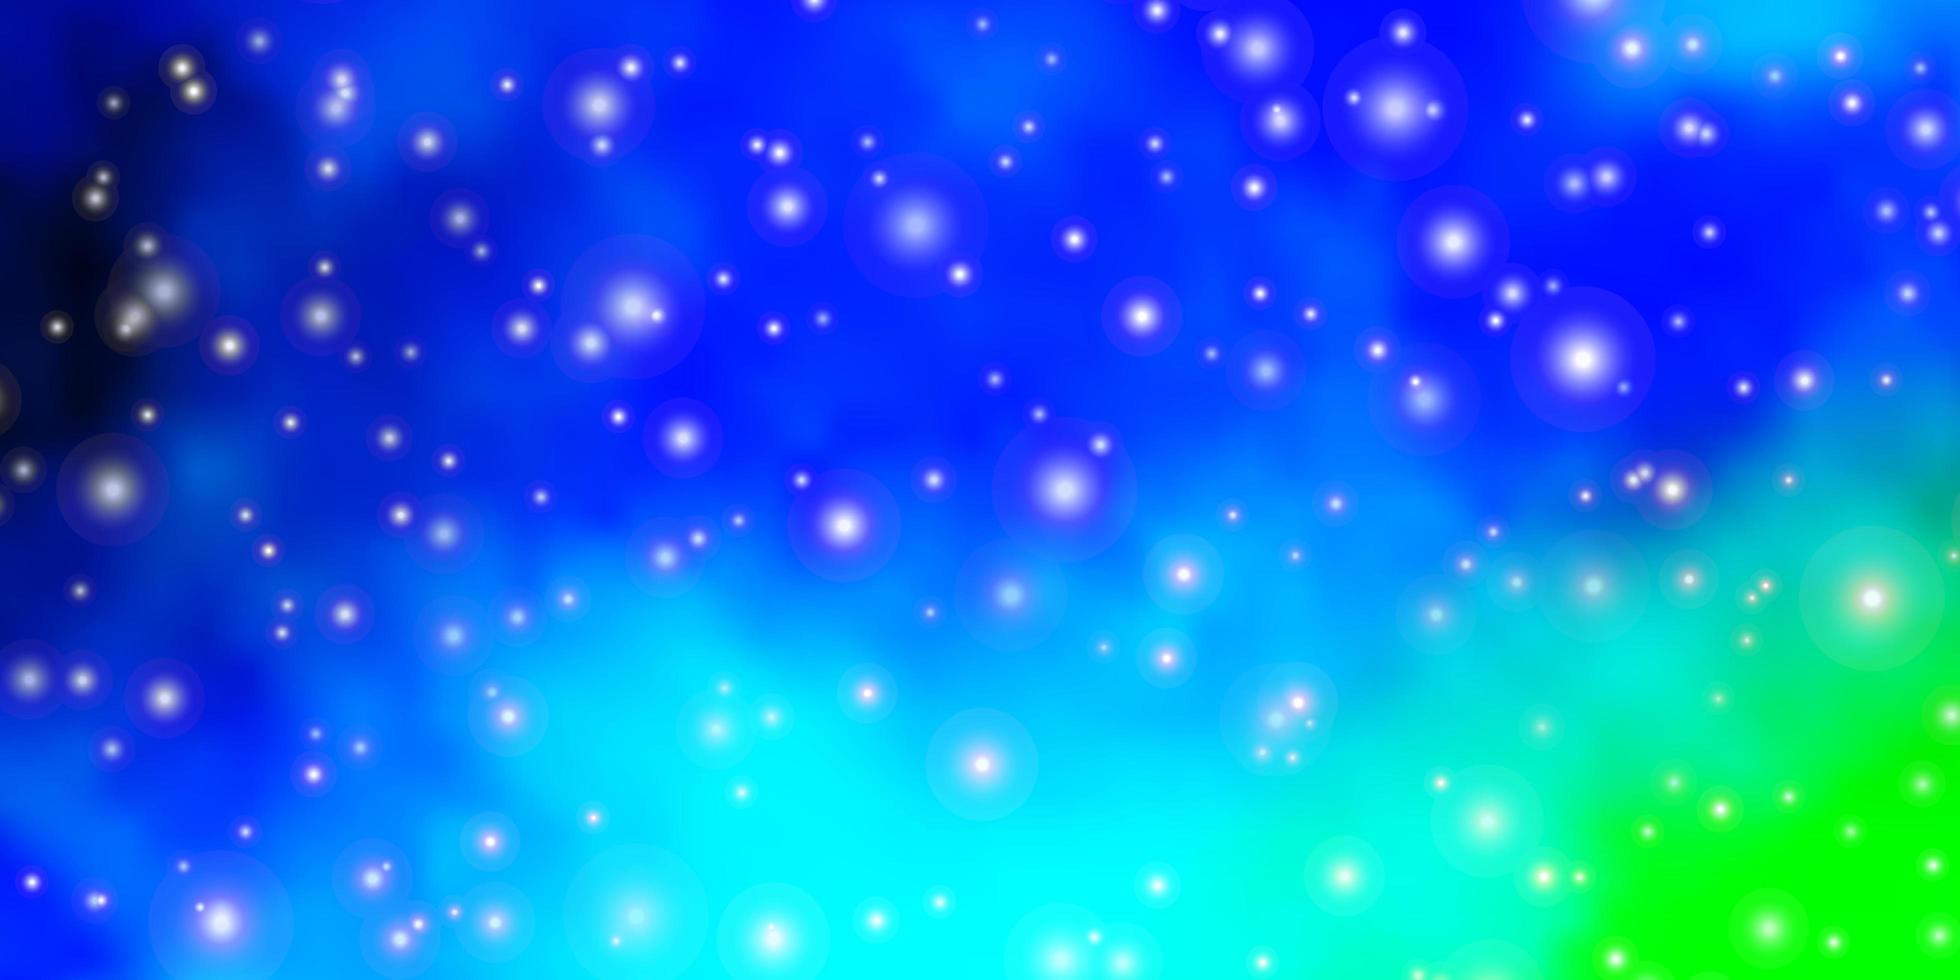 layout de vetor de azul claro e verde com estrelas brilhantes.